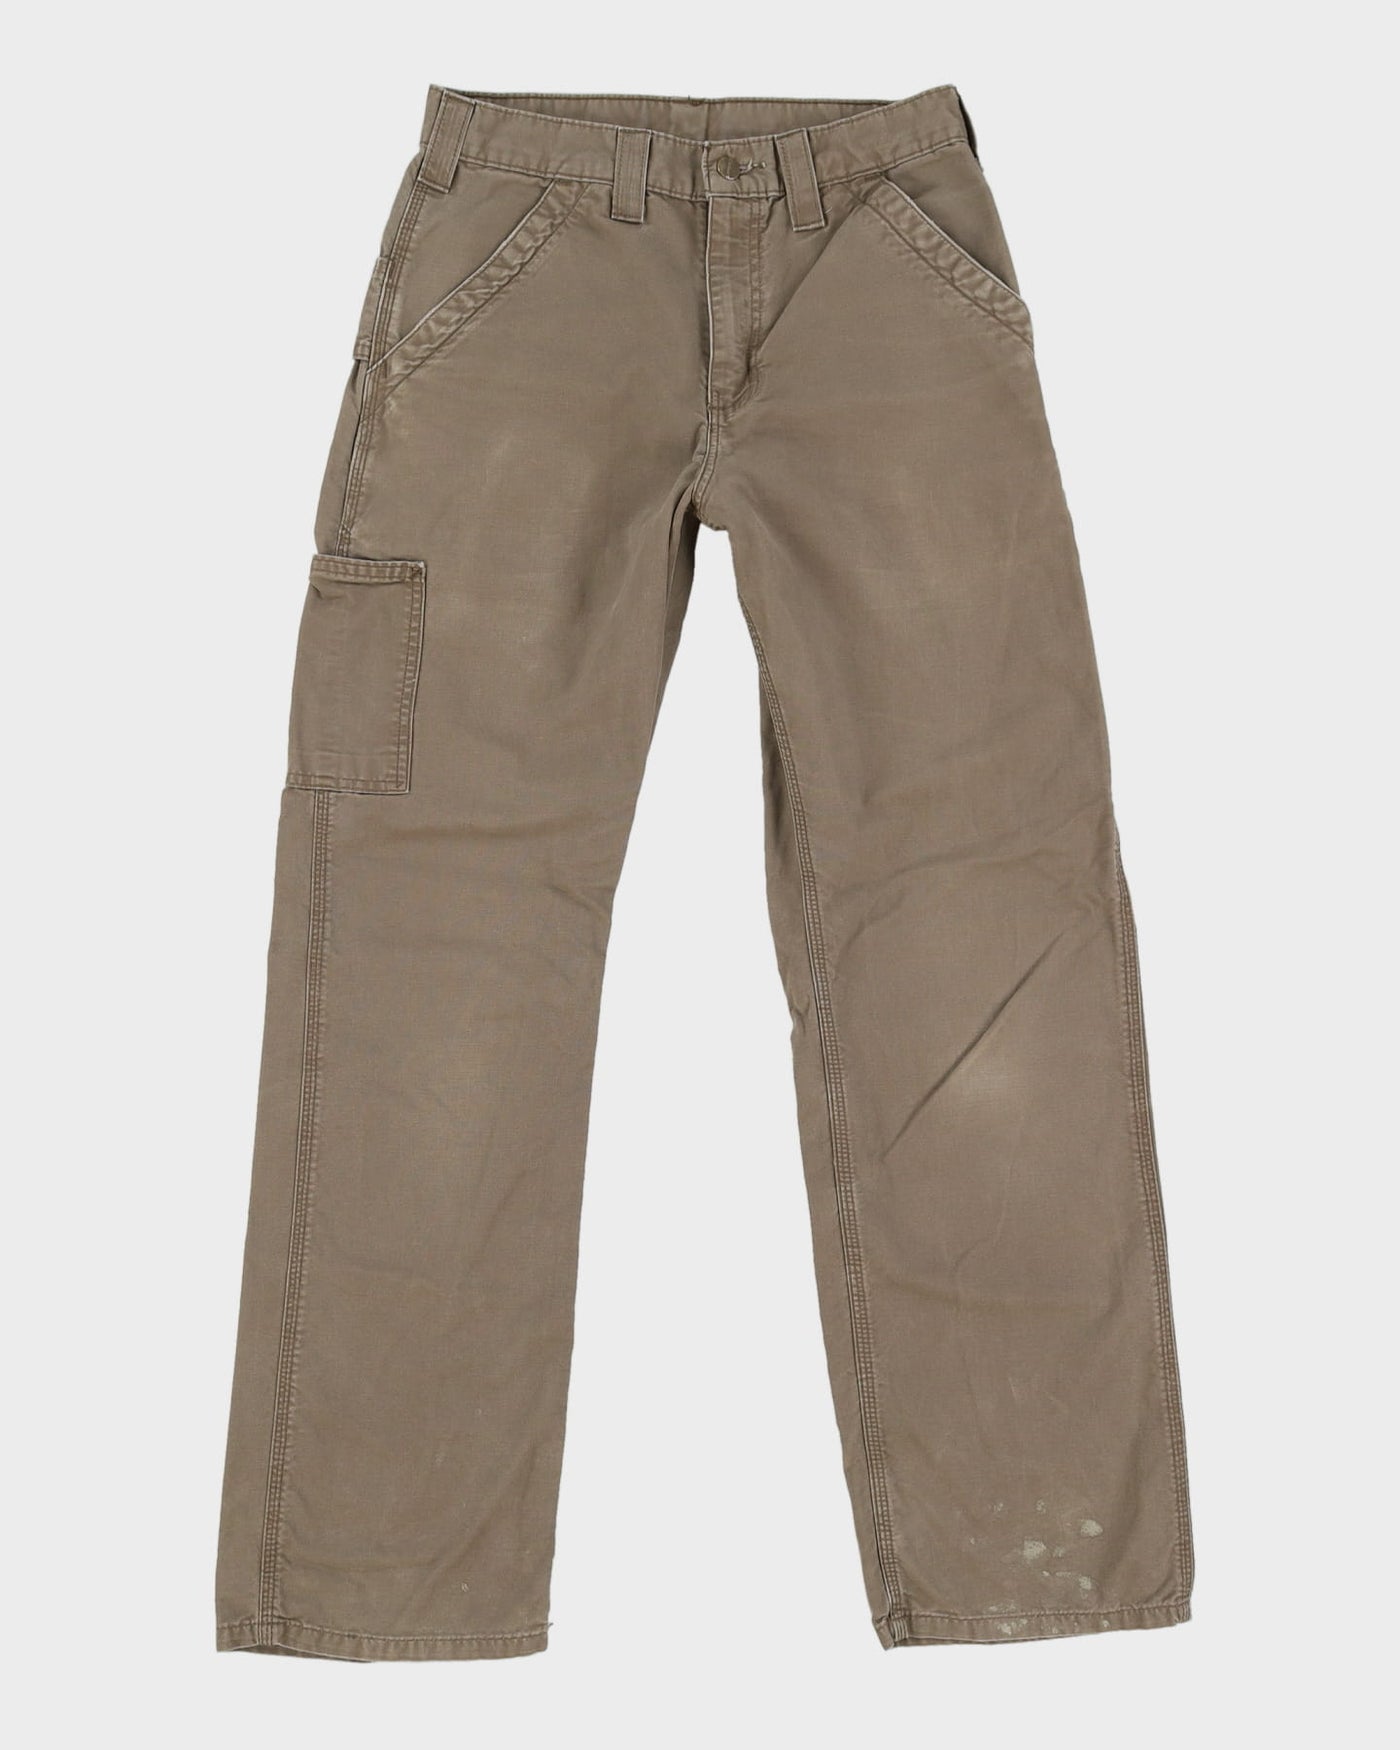 Carhartt Dark Beige Workwear Trousers / Jeans - W29 L31